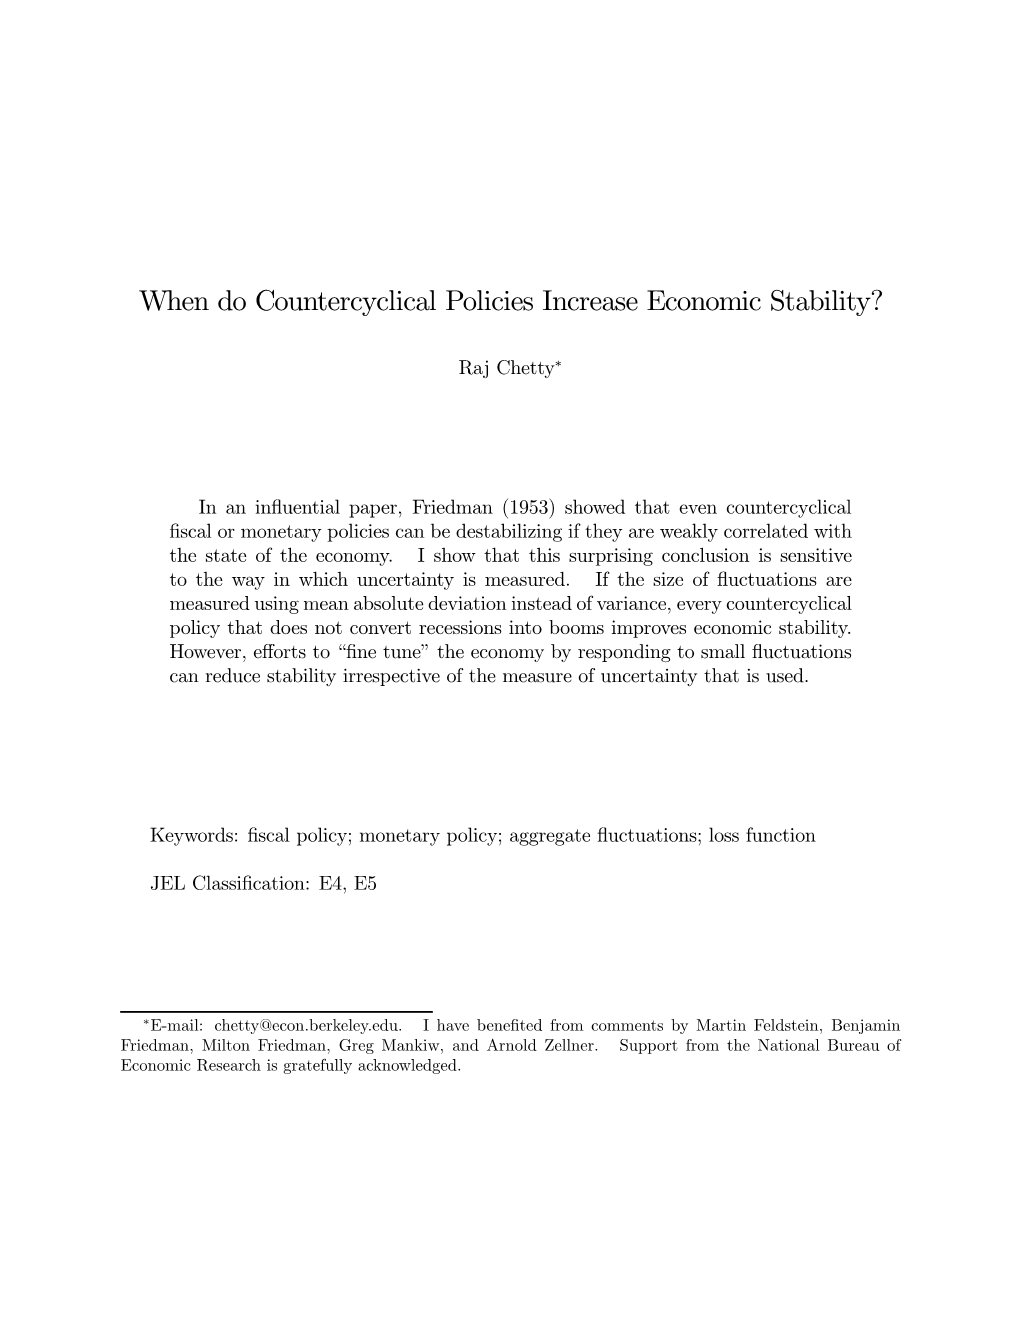 When Do Countercyclical Policies Increase Economic Stability?